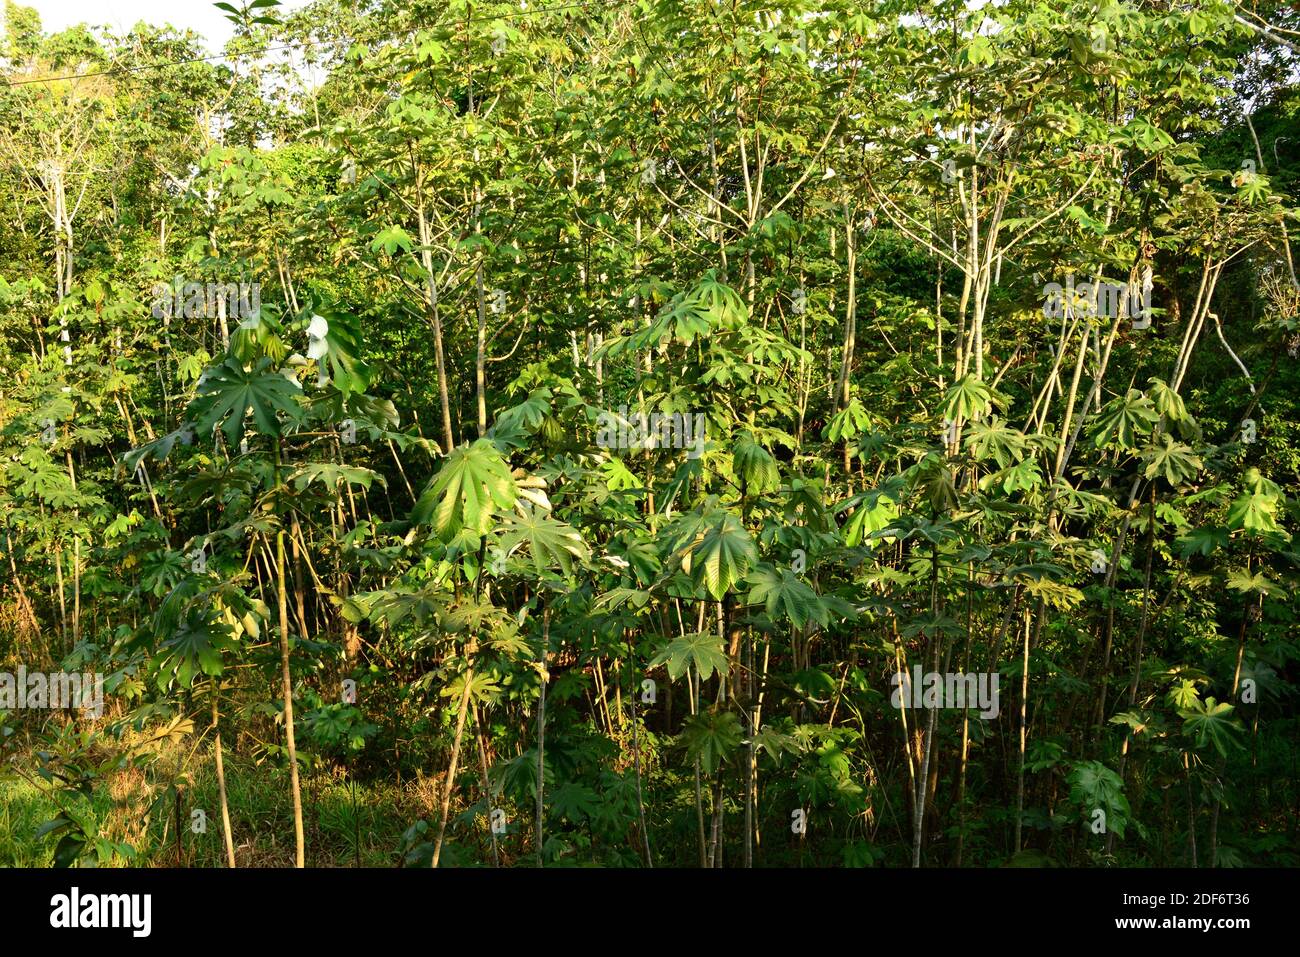 El scakewood (Cecropia peltata) es un árbol invasor perenne nativo de las Américas tropicales. Esta foto fue tomada cerca de Manaus, Brasil. Foto de stock